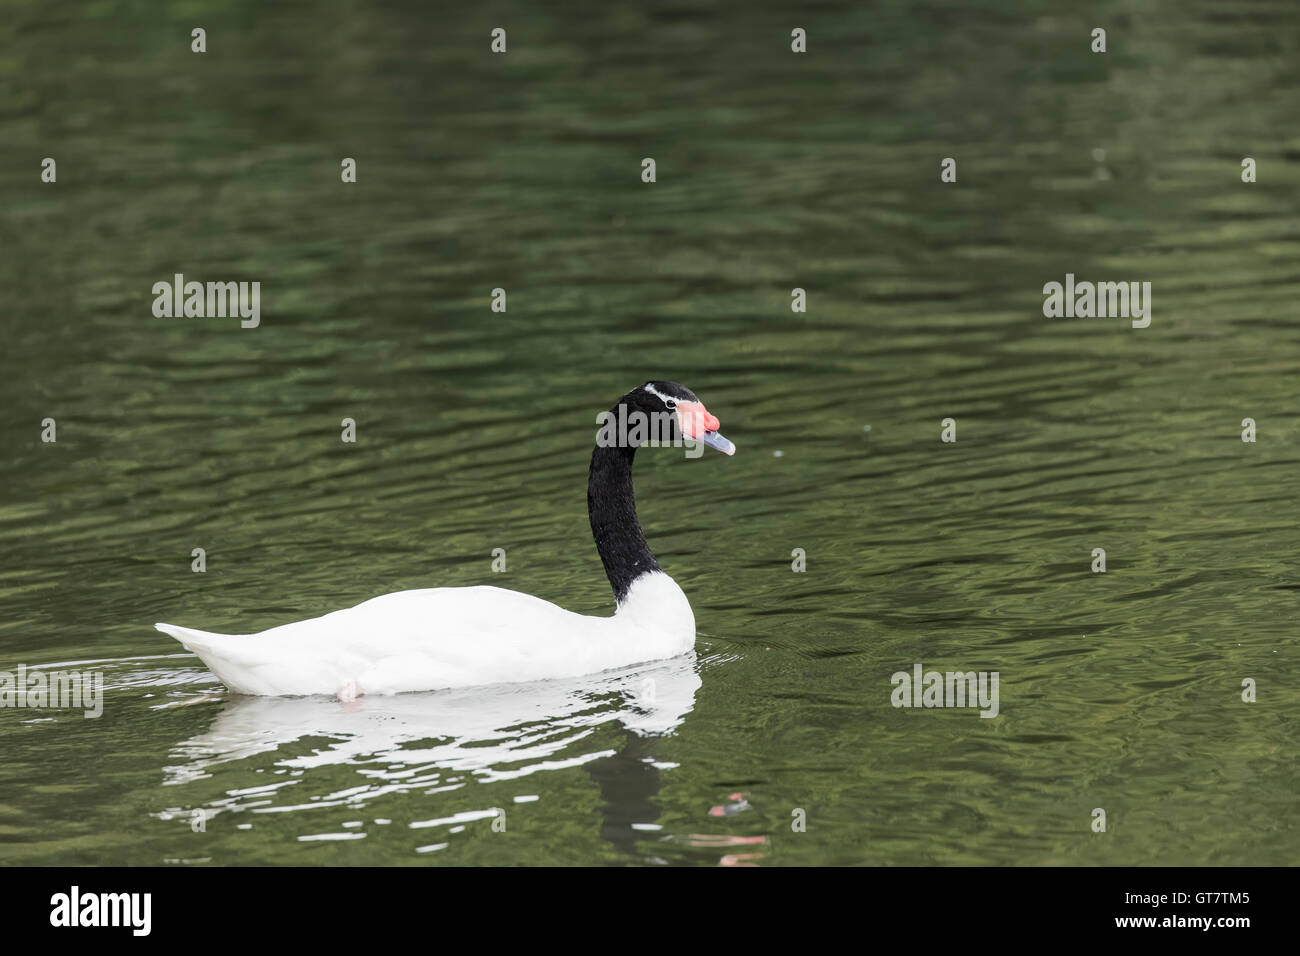 Black Swan con testa con becco rosso e corpo di colore bianco a nuotare in acqua con riflessi nell'acqua e sfondo isolato Foto Stock